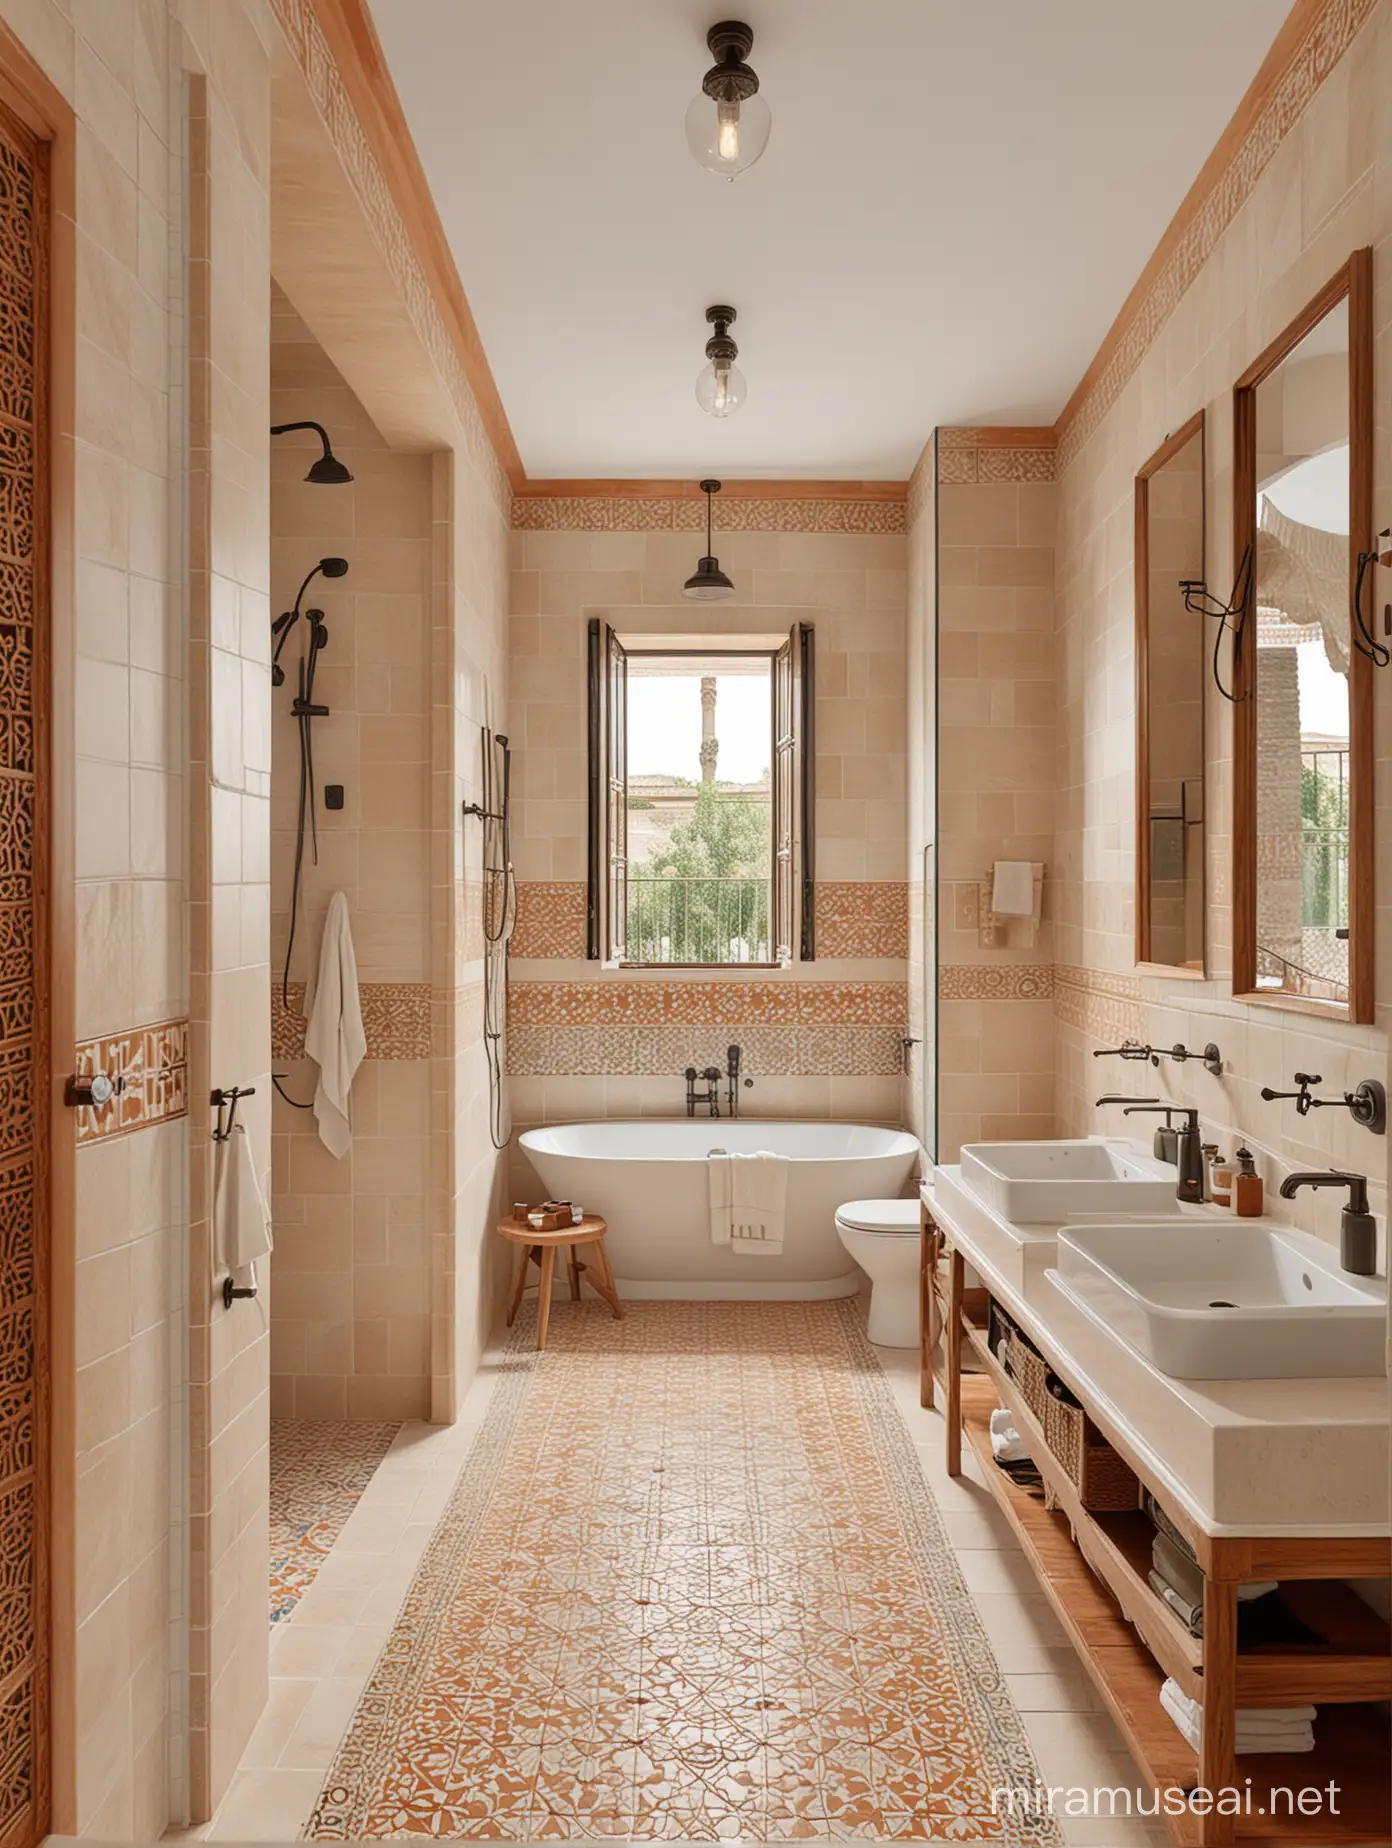 wygeneruj wizualizacje duzej łazienki w andaluzyjskim domu. Styl nowoczesny z akcentami andaluzyjskimi, azulejos na podłodze w kolorach beż i terracota, duzą kabina prysznicowa, 2 umywalki 